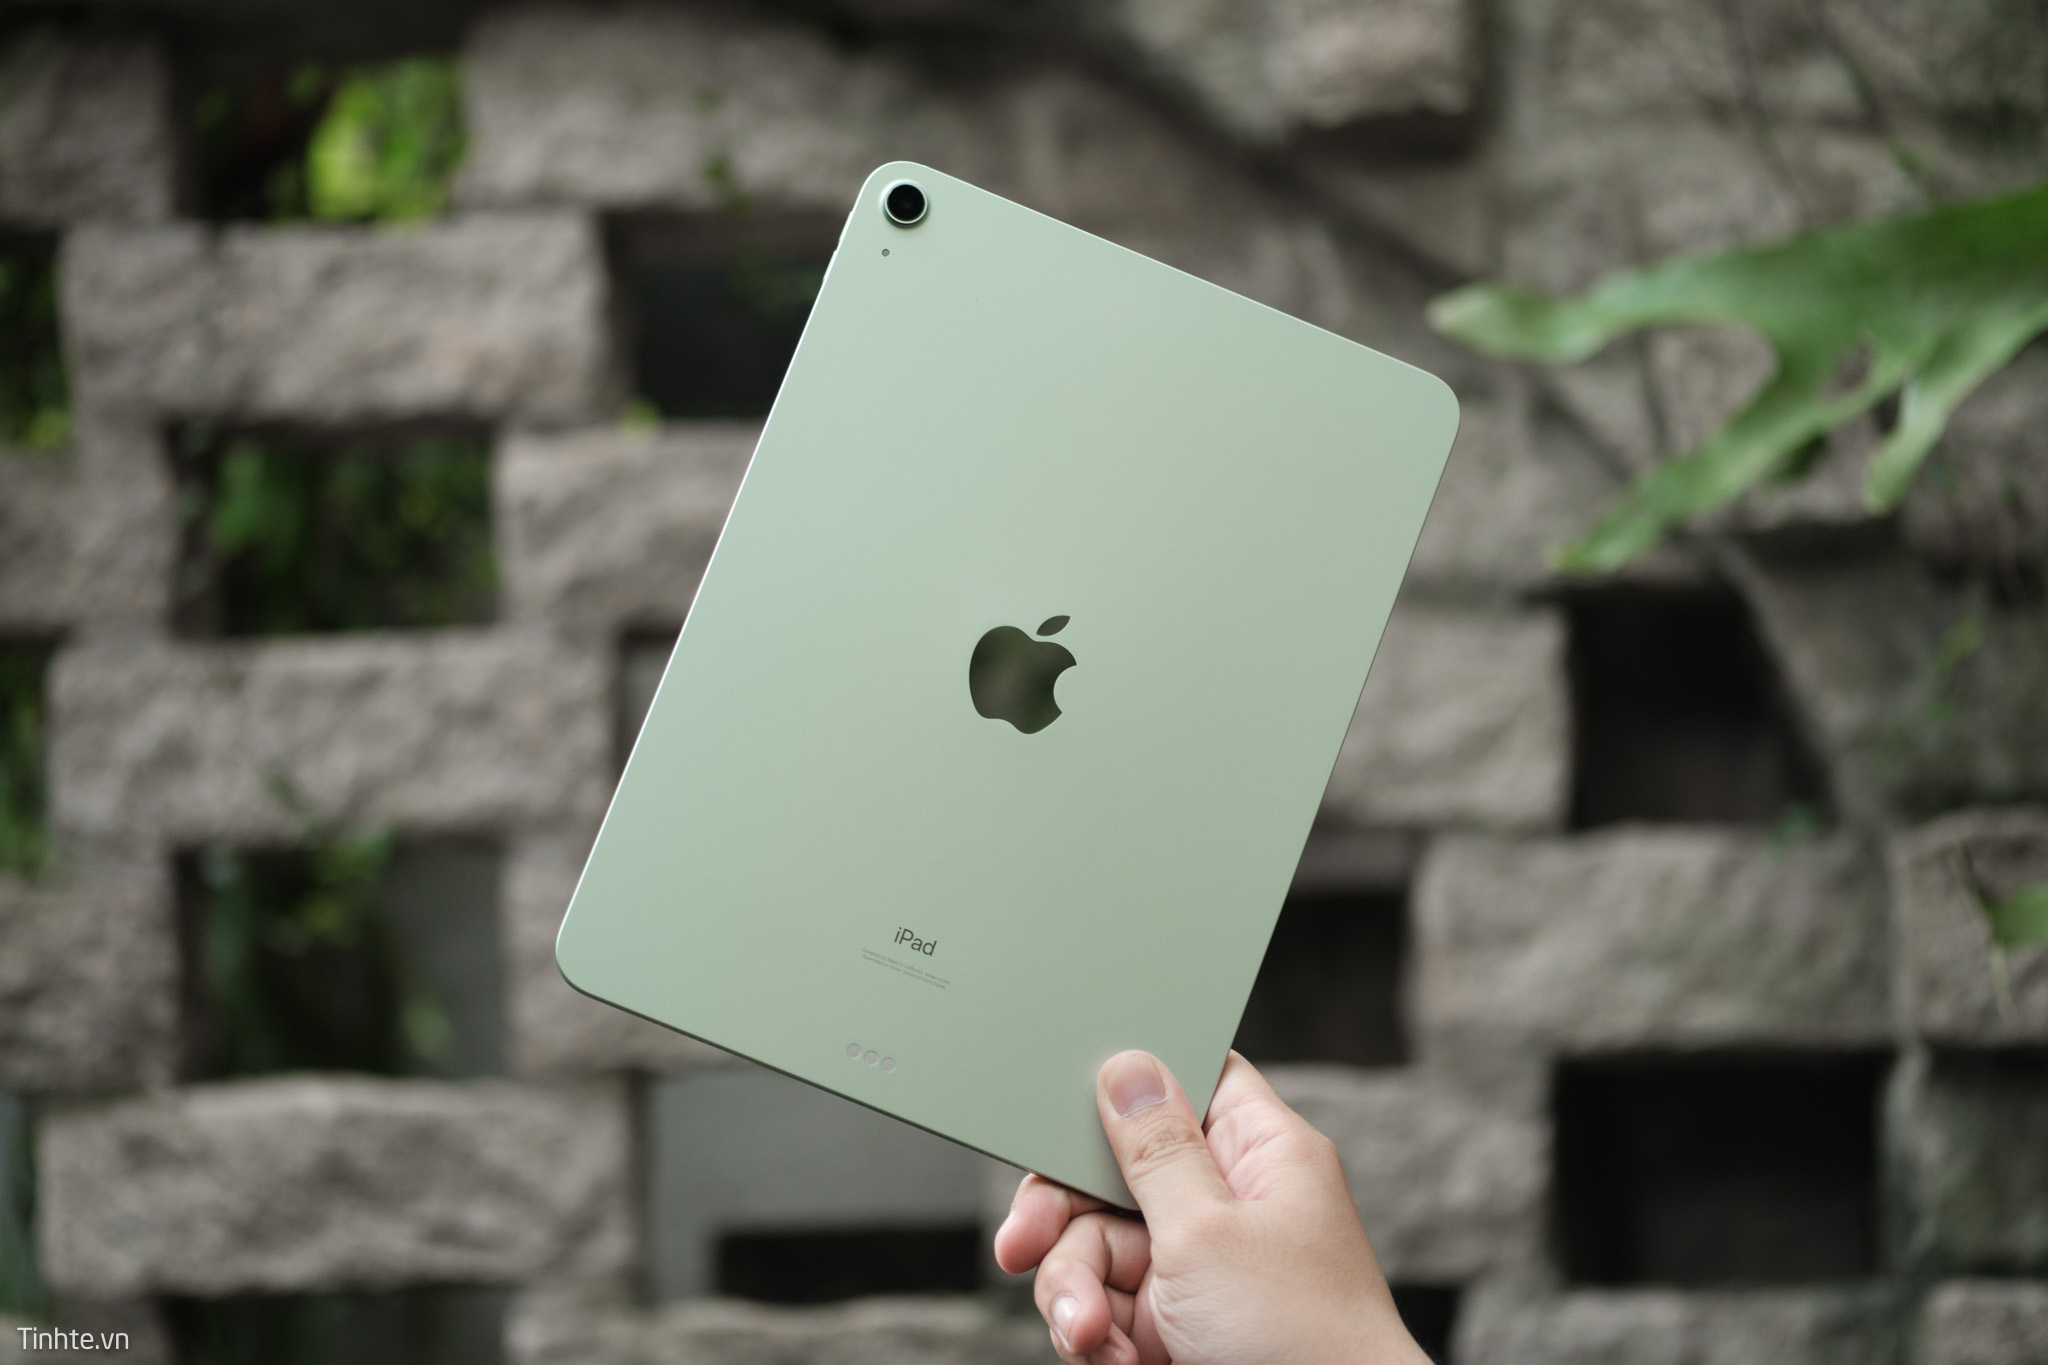 Tin đồn: iPad Air mới sẽ có thiết kế không đổi, ra mắt vào Mùa Xuân năm nay